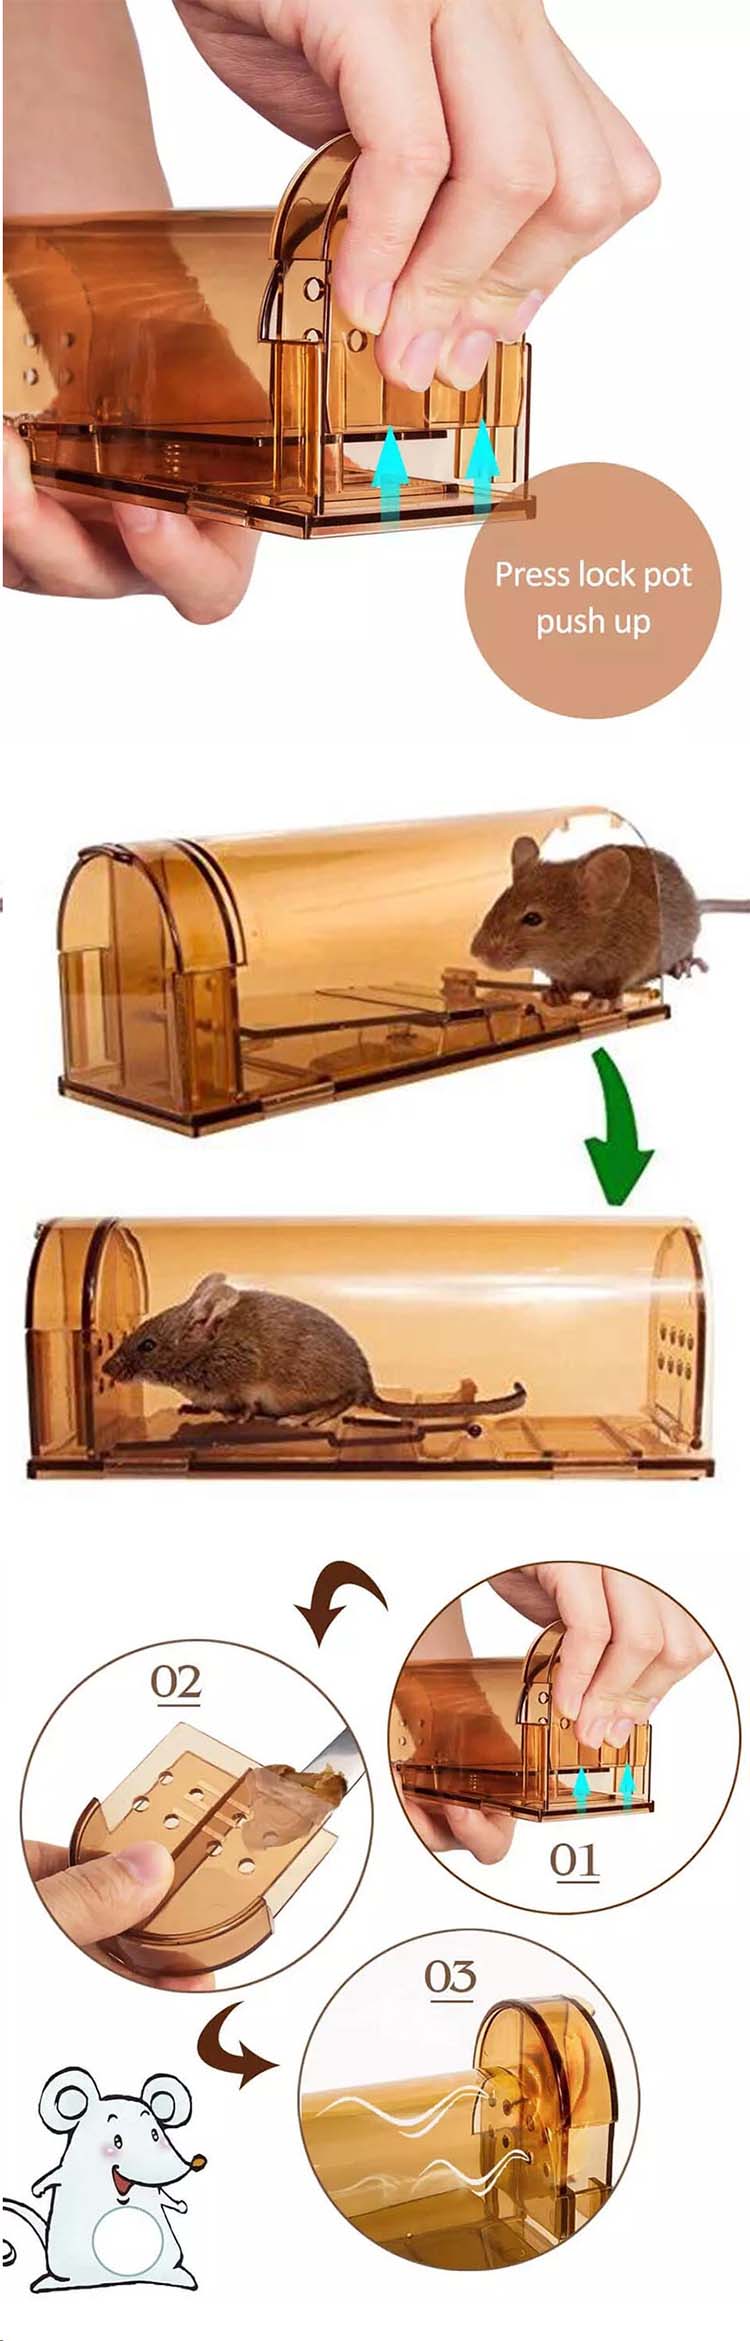 2019 Amazon Venta caliente Hogar Plástico Humano Live Catch Smart Mouse Rat Trap Mouse Trap Cage03